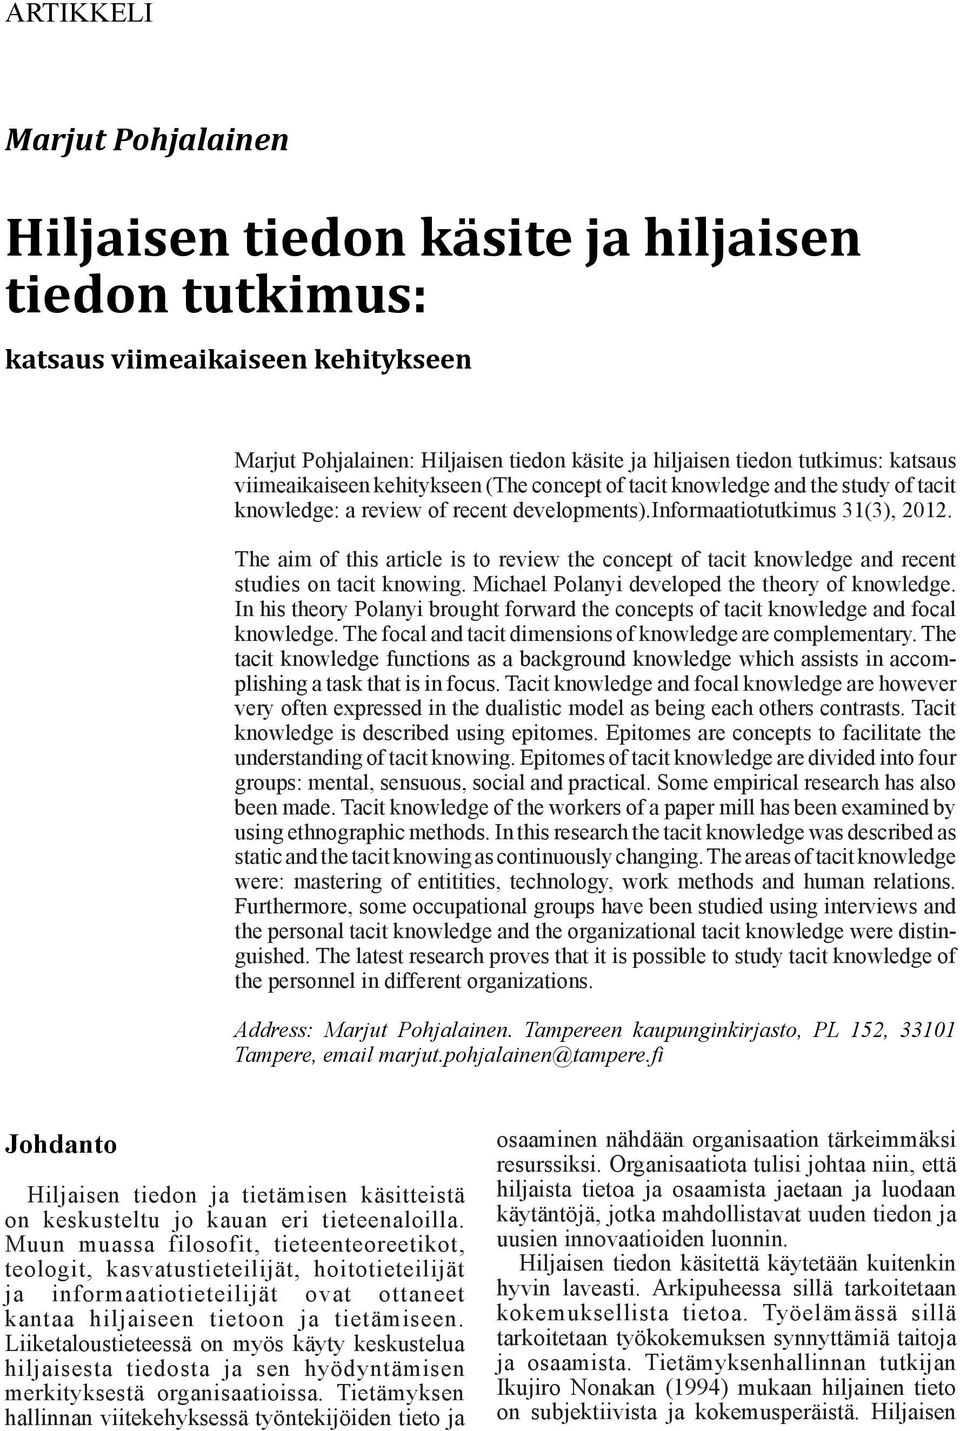 viimeaikaiseen kehitykseen (The concept of tacit knowledge and the study of tacit knowledge: a review of recent developments).informaatiotutkimus 31(3), 2012.